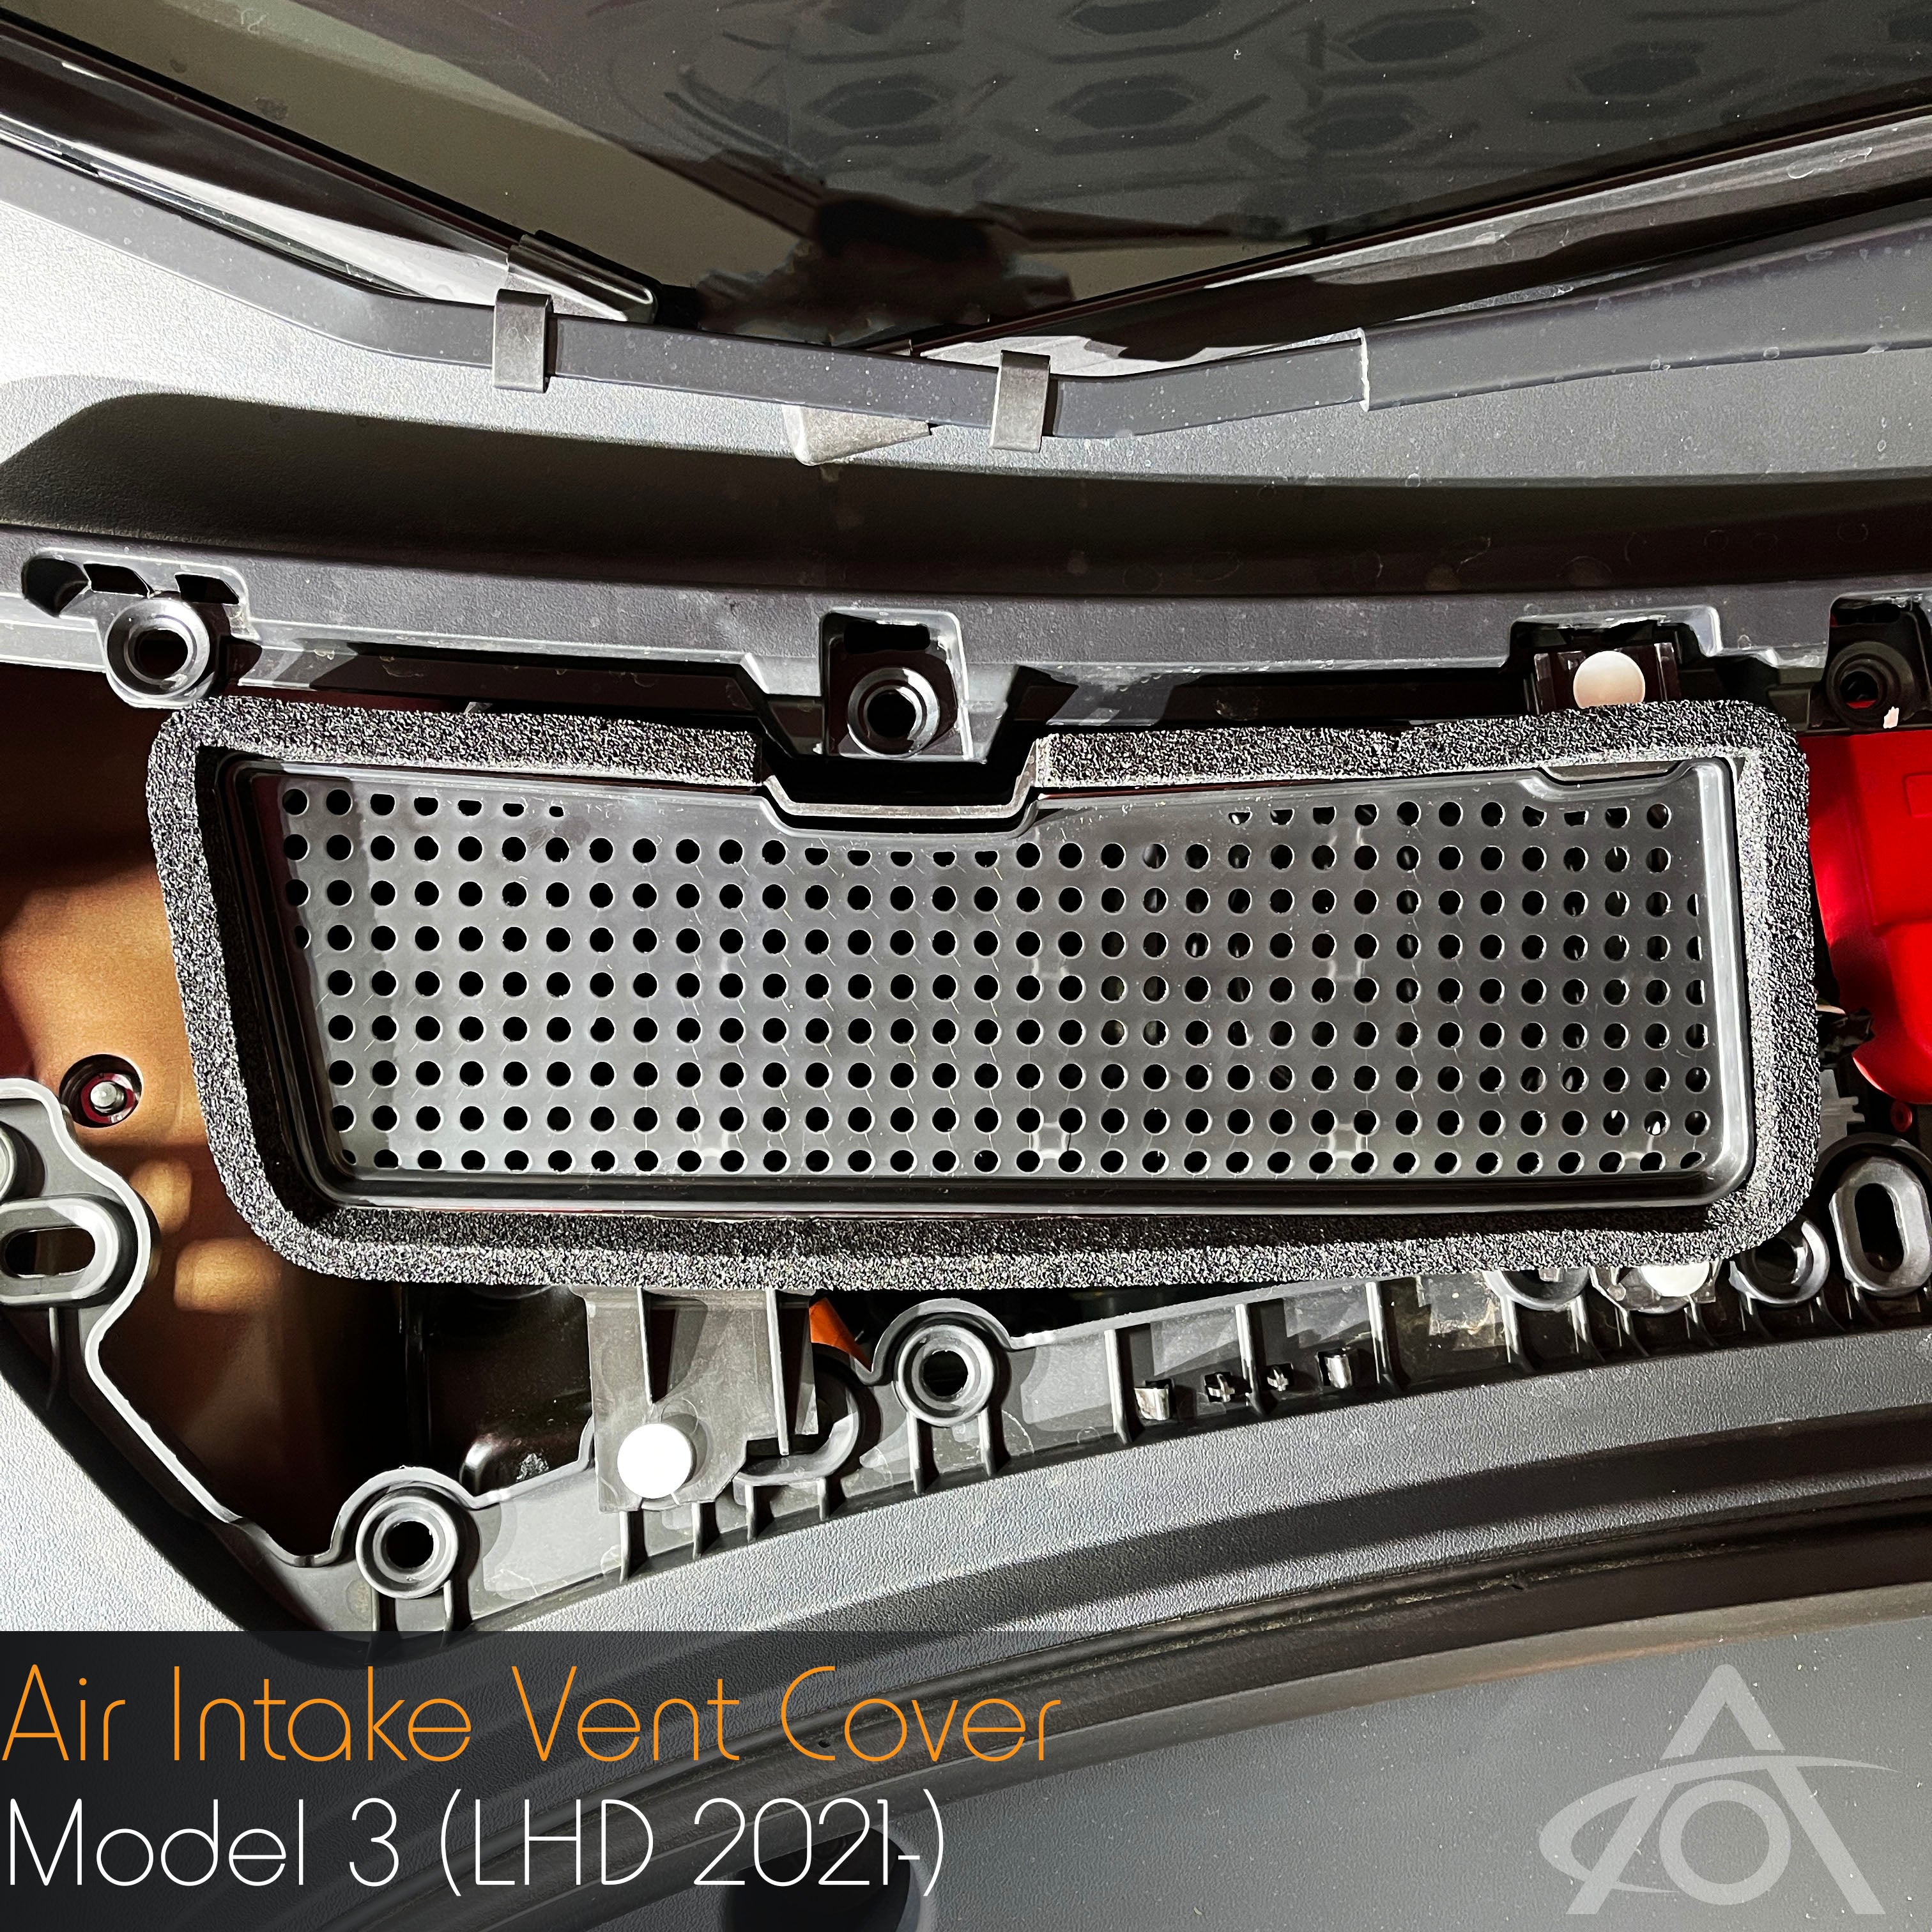 Tesla Model 3 Air Intake Vent Cover